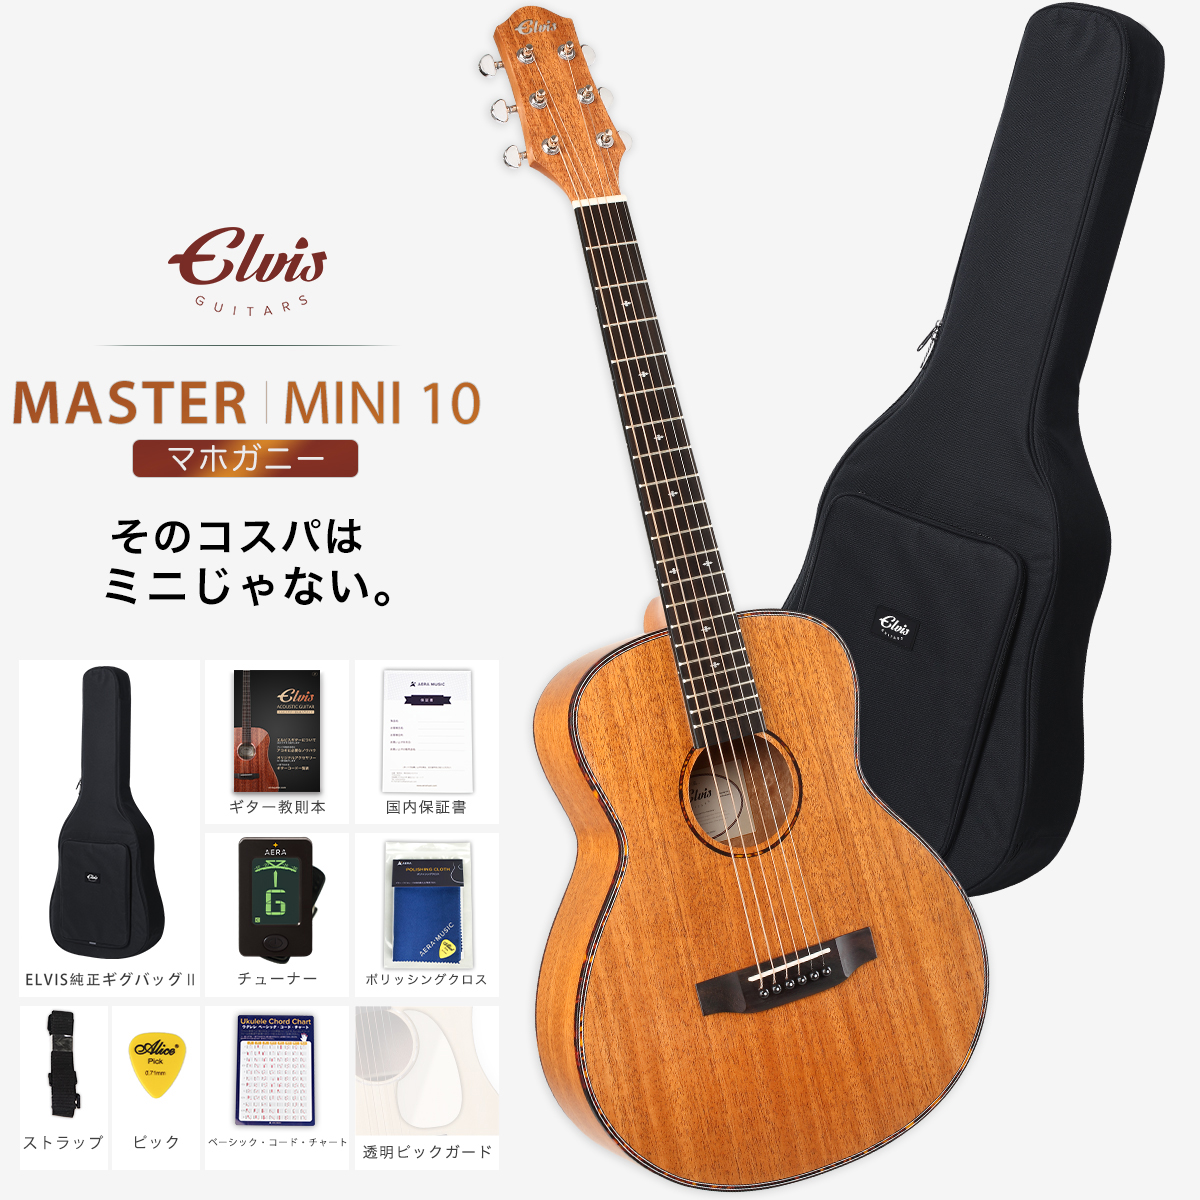 【初心者定番９点セット】ELVISエルビス Master Mini 10・抱えやすい本格的なミニギター・36インチ・トラベルギター・マホガニー材【国内保証書・チューナー・厳選11曲の教則本・ピックガード・コードチャート・ピック・ストラップ・クロース・純正ギグバッグ】MSMini10-MA